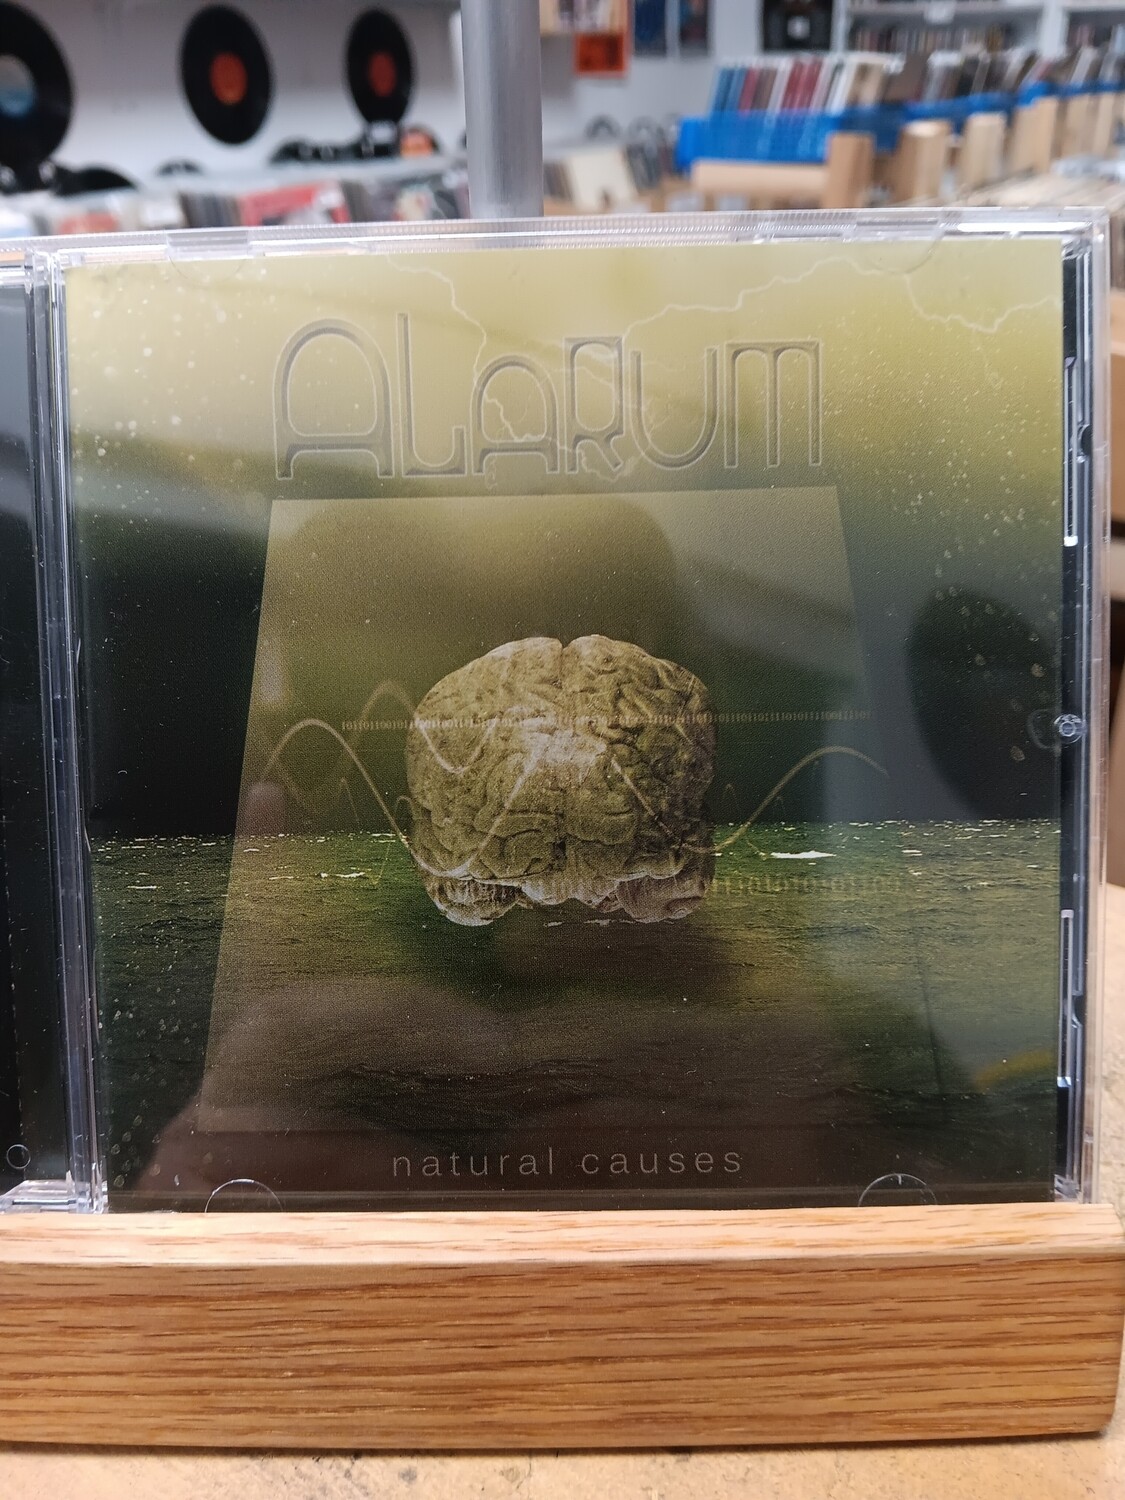 Alarum - Natural Causes (CD)